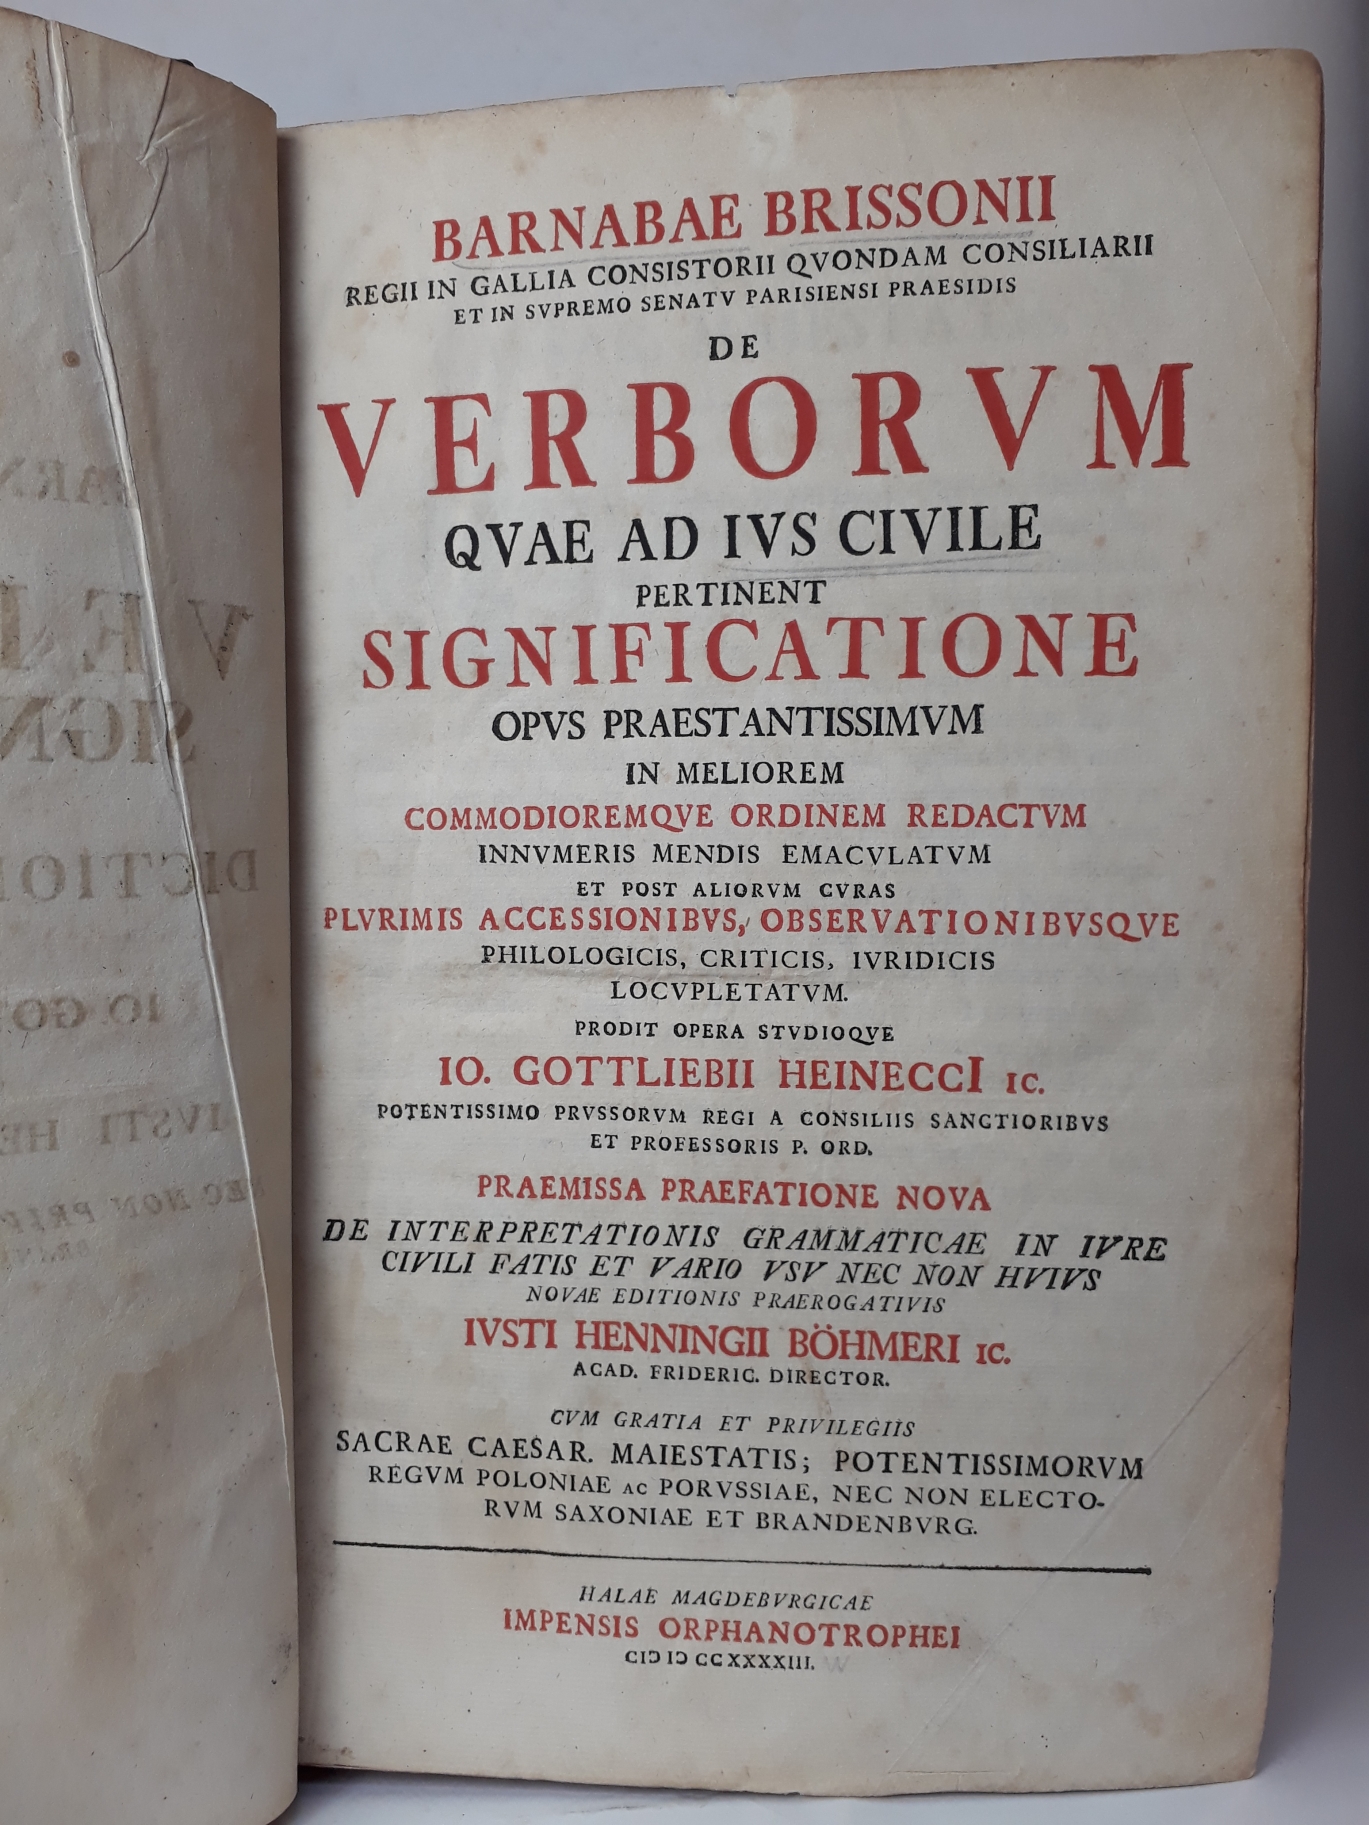 Brissonii, Barnabae: De verborum quae ad ius civile pertinent significatione opus praestantissimum in meliorem commodioremque ordinem redactum ...